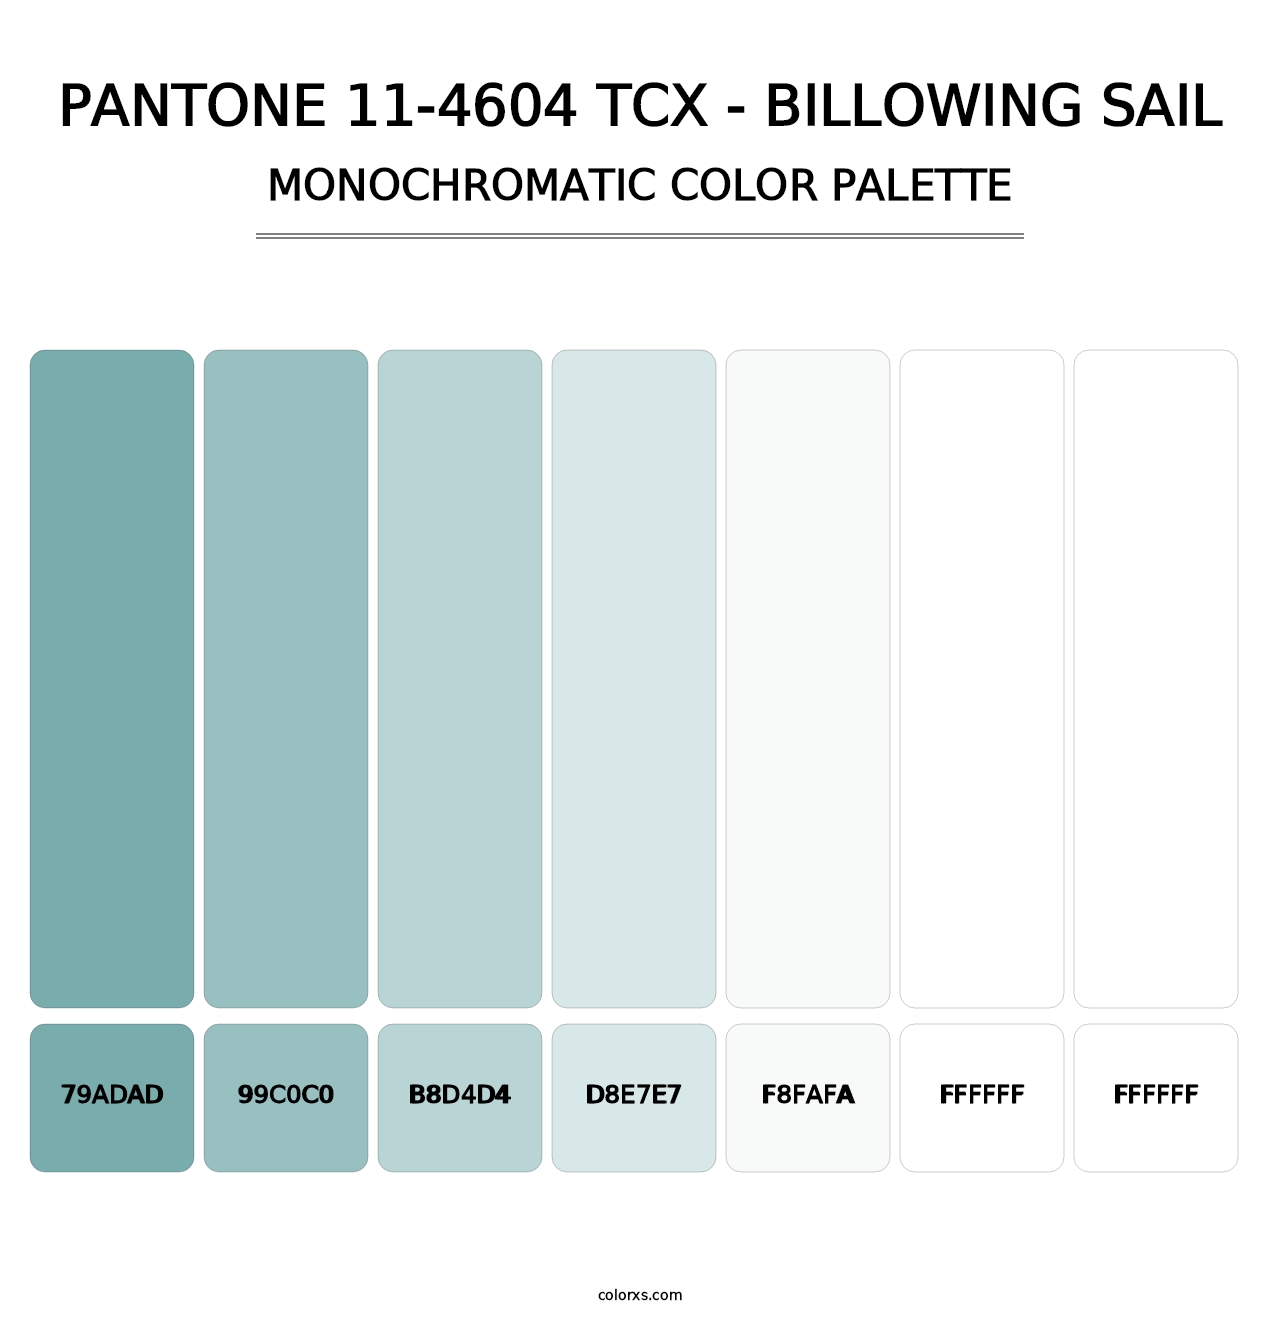 PANTONE 11-4604 TCX - Billowing Sail - Monochromatic Color Palette